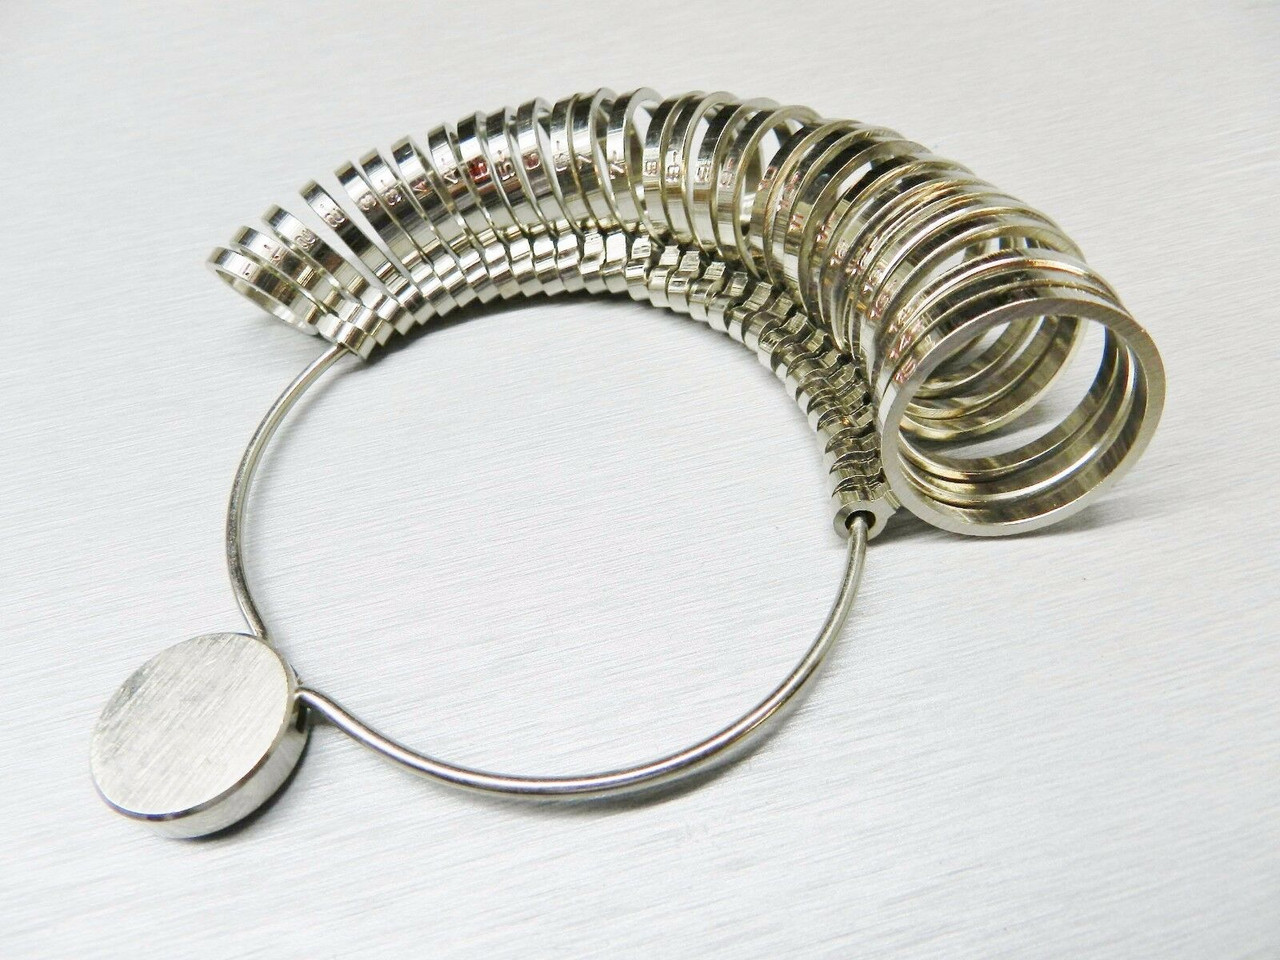 Metal Finger Ring Size Measuring Gauge Jewelry Making Tool Sizer